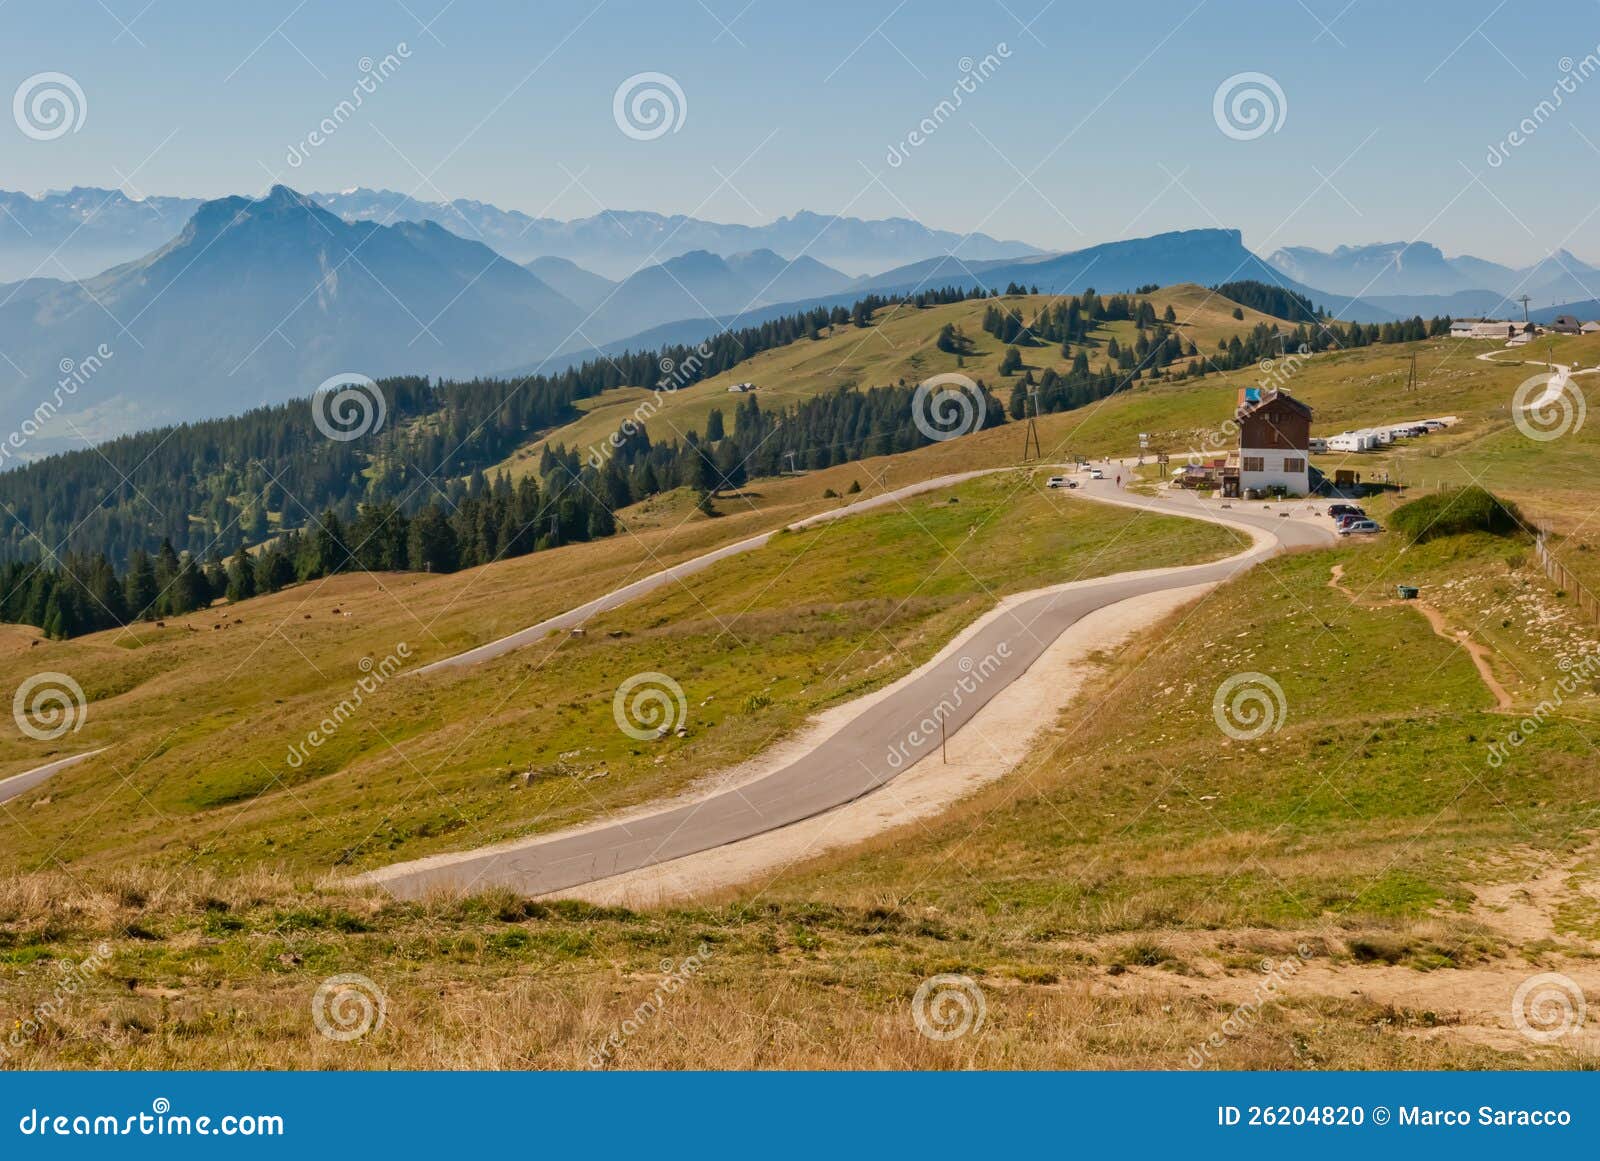 Alps Mountains landscape. Mountains landscape from Cret de Chatillon, France